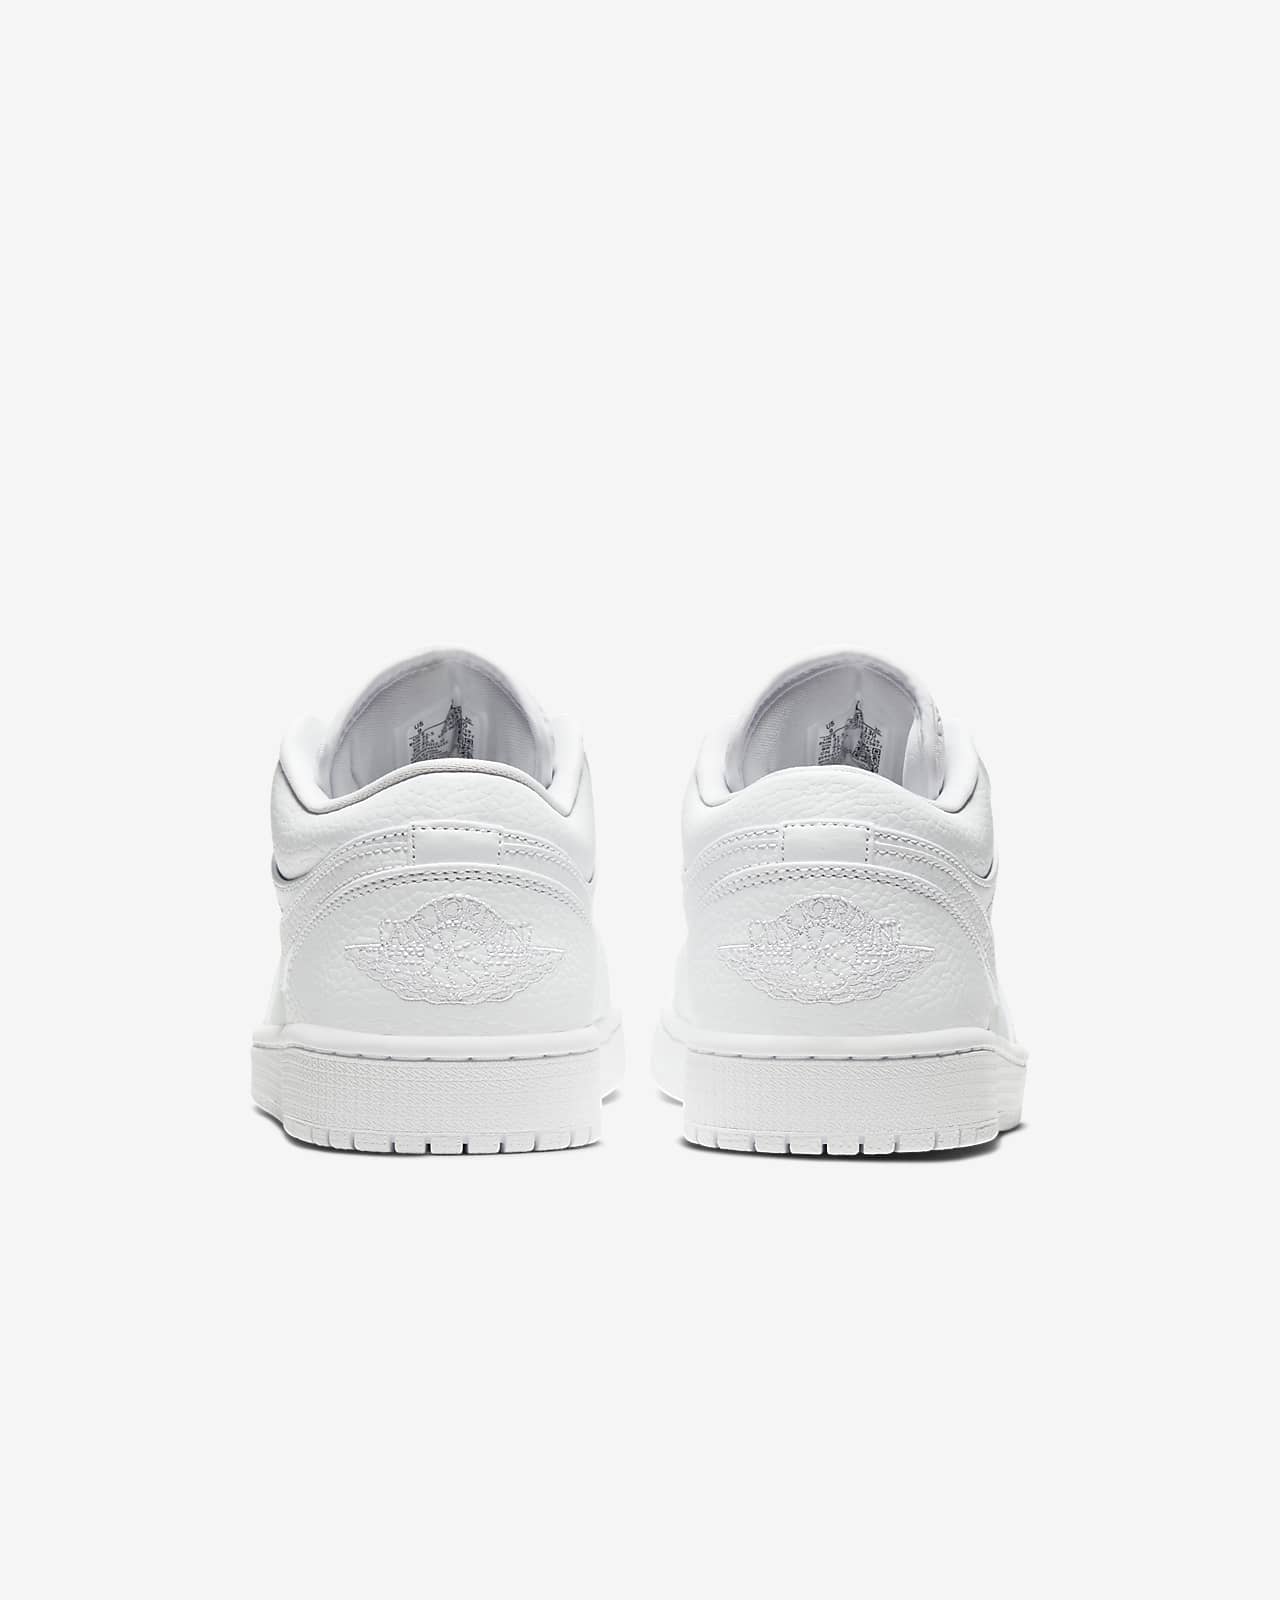 Air Jordan 1 Low Shoe Nike Ph